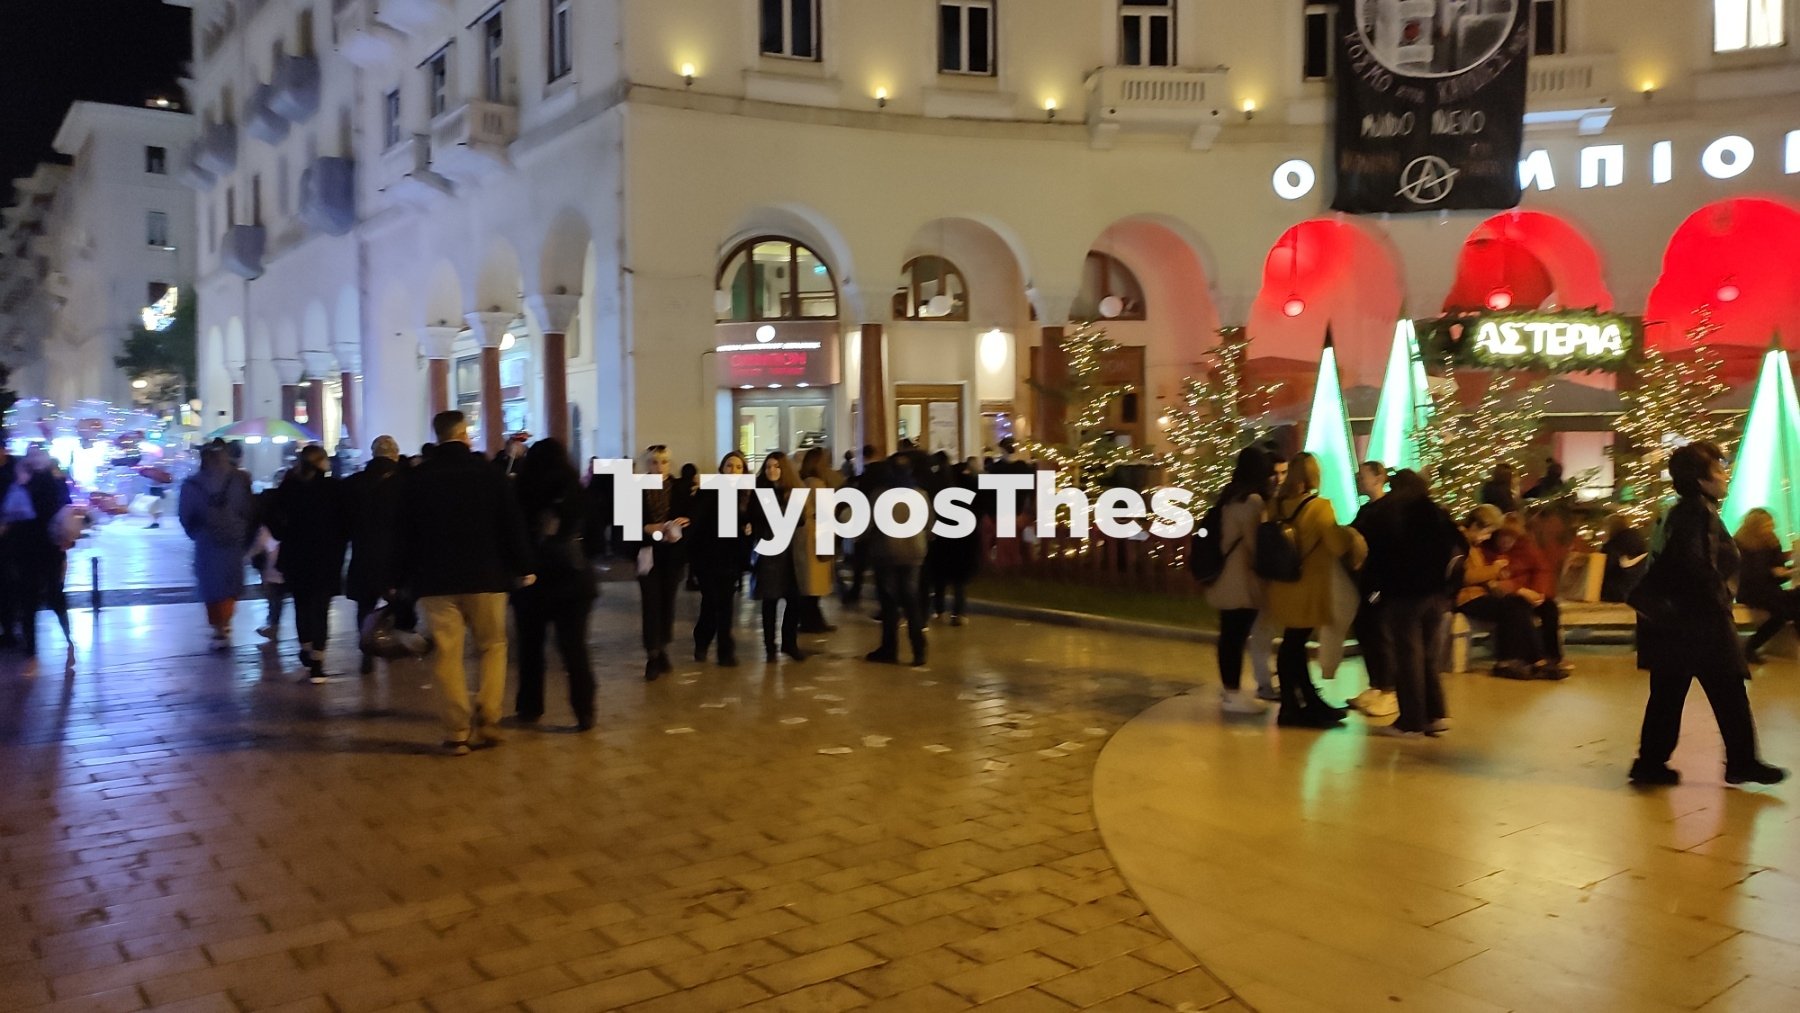 Θεσσαλονίκη: 21 συλλήψεις για την επιθεση σε τρανς αλλά… καμία για τον ξυλοδαρμό του αστυνομικού